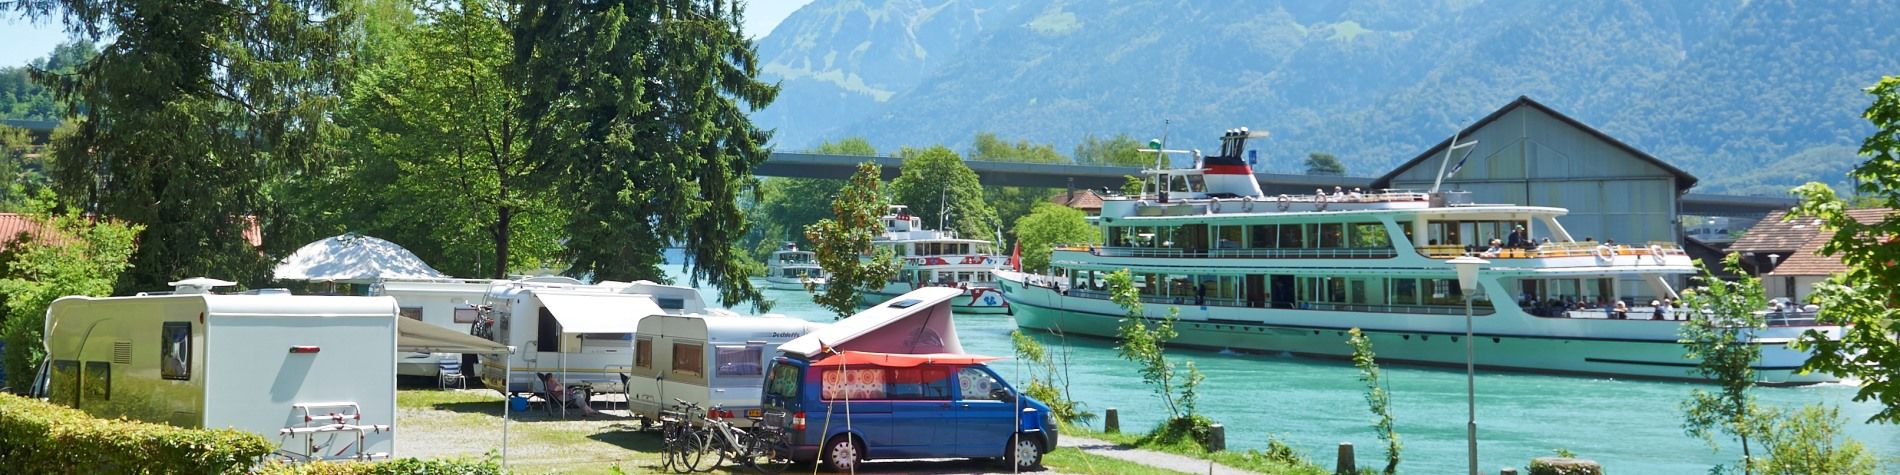 Camping-Zubehör zu reduzierten Preisen - TCS Schweiz